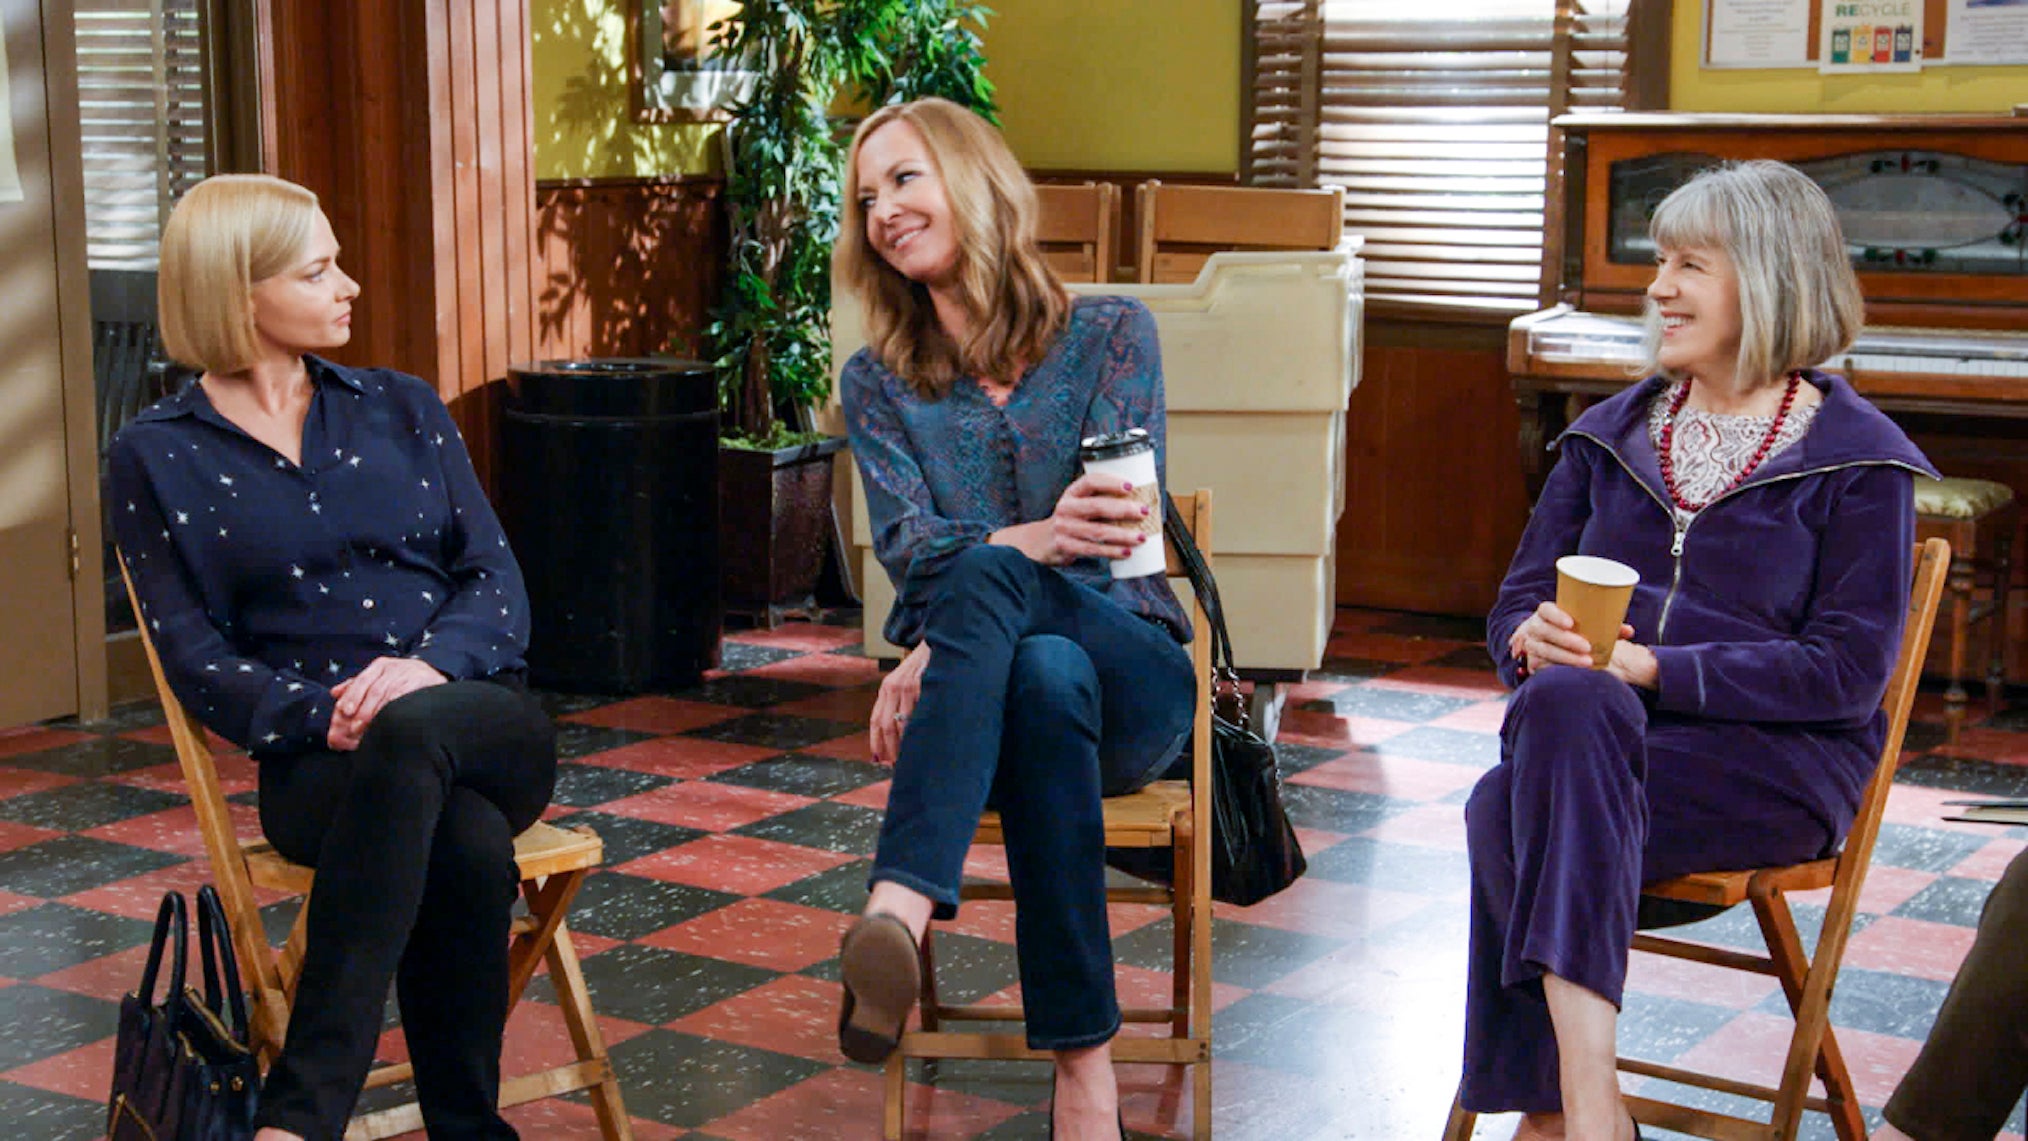 Cena da série Mom que mostra 3 mulheres sentadas e se olhando.